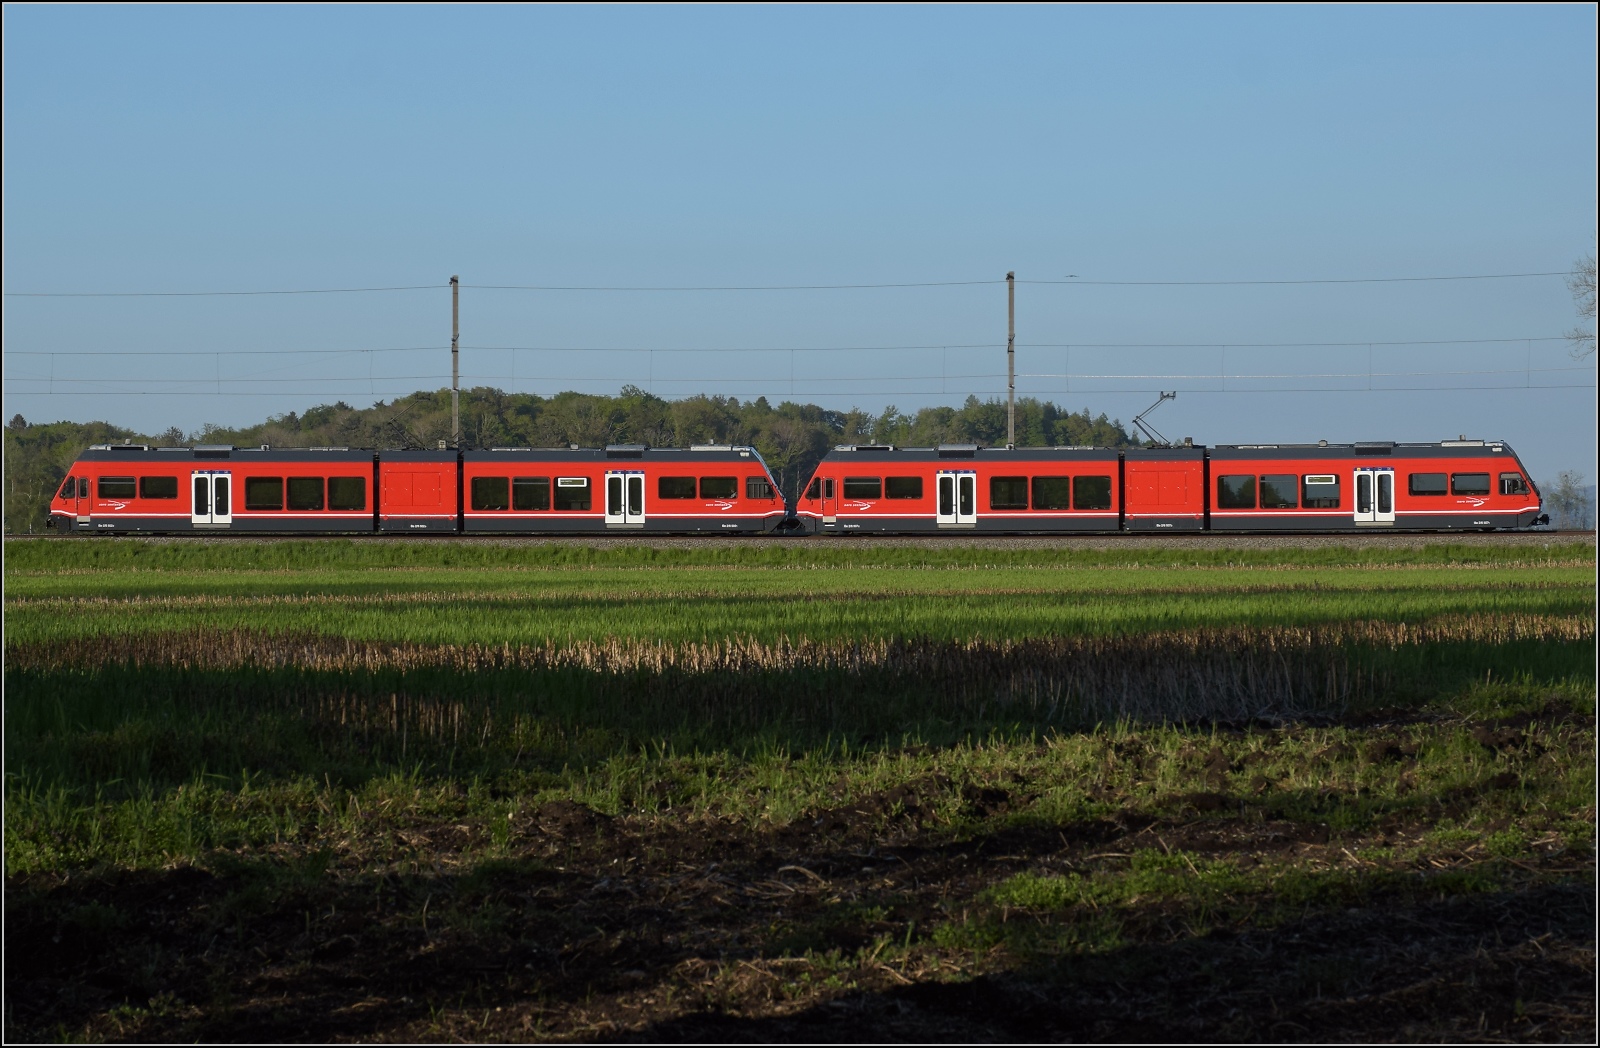 Auf der Biel-Täuffelen-Ins Bahn.

GTW Be 2/6 502 und GTW Be 2/6 507 der ASm im Lüscherzer Moos. April 2022.